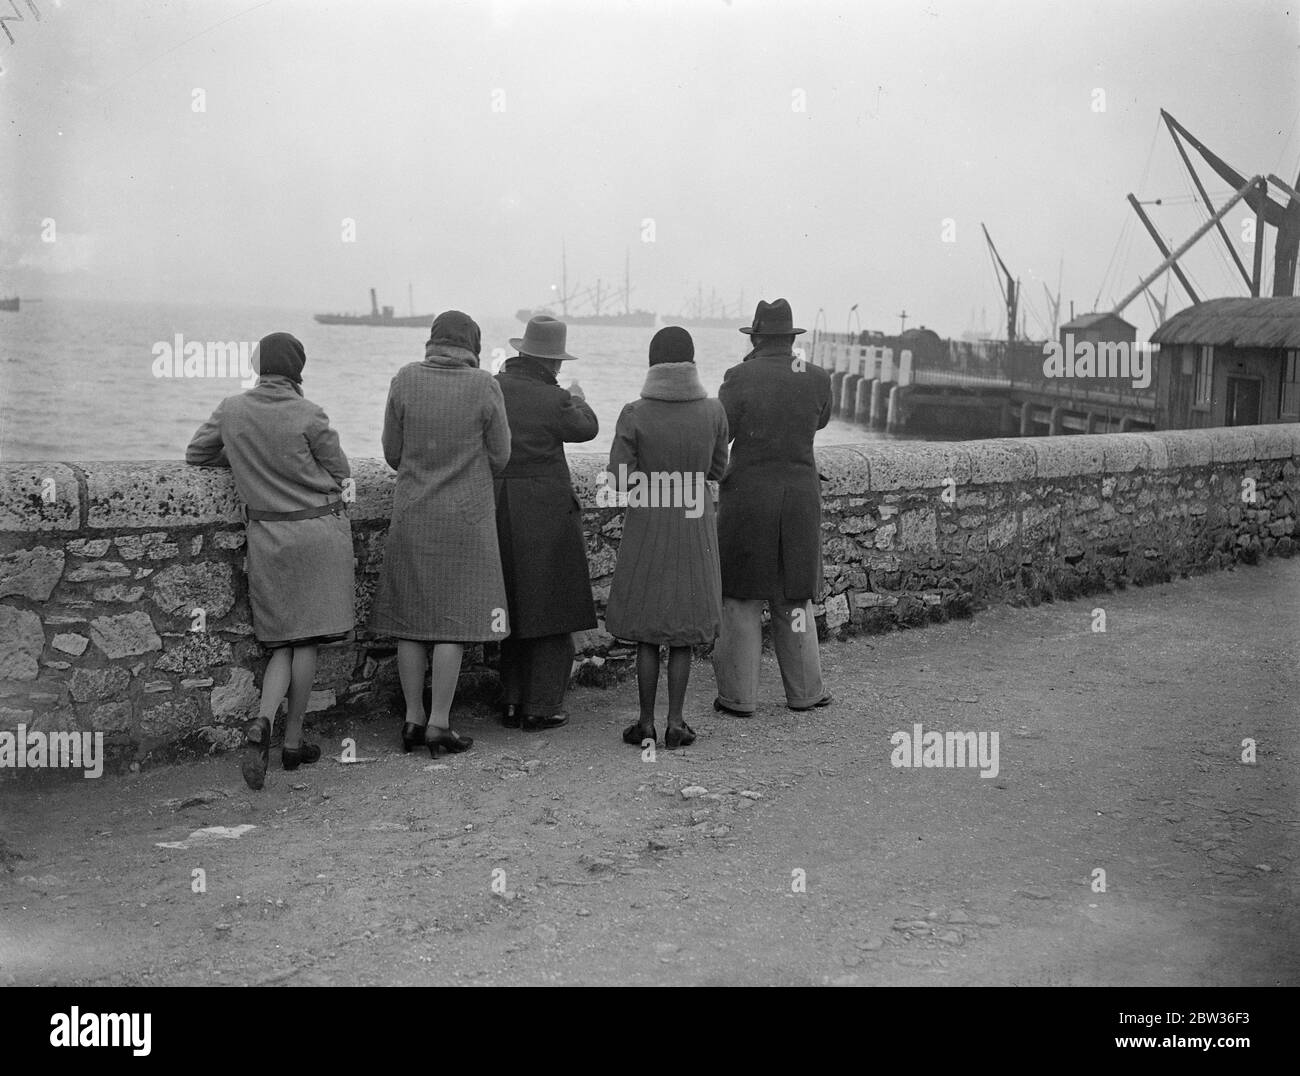 Hoffnung gegen Hoffnung in Portland. Freunde und Verwandte warten vergeblich auf Nachricht von vermissten U-Boot-Besatzung. Freunde von Männern in der U-Boot-M2 verschwanden in Lyme Bay, Dorset, Großbritannien, am 26. Januar , Warten auf den Hafen für die neuesten Nachrichten über das fehlende U-Boot , die nicht kommen . 28. Januar 1932 Stockfoto